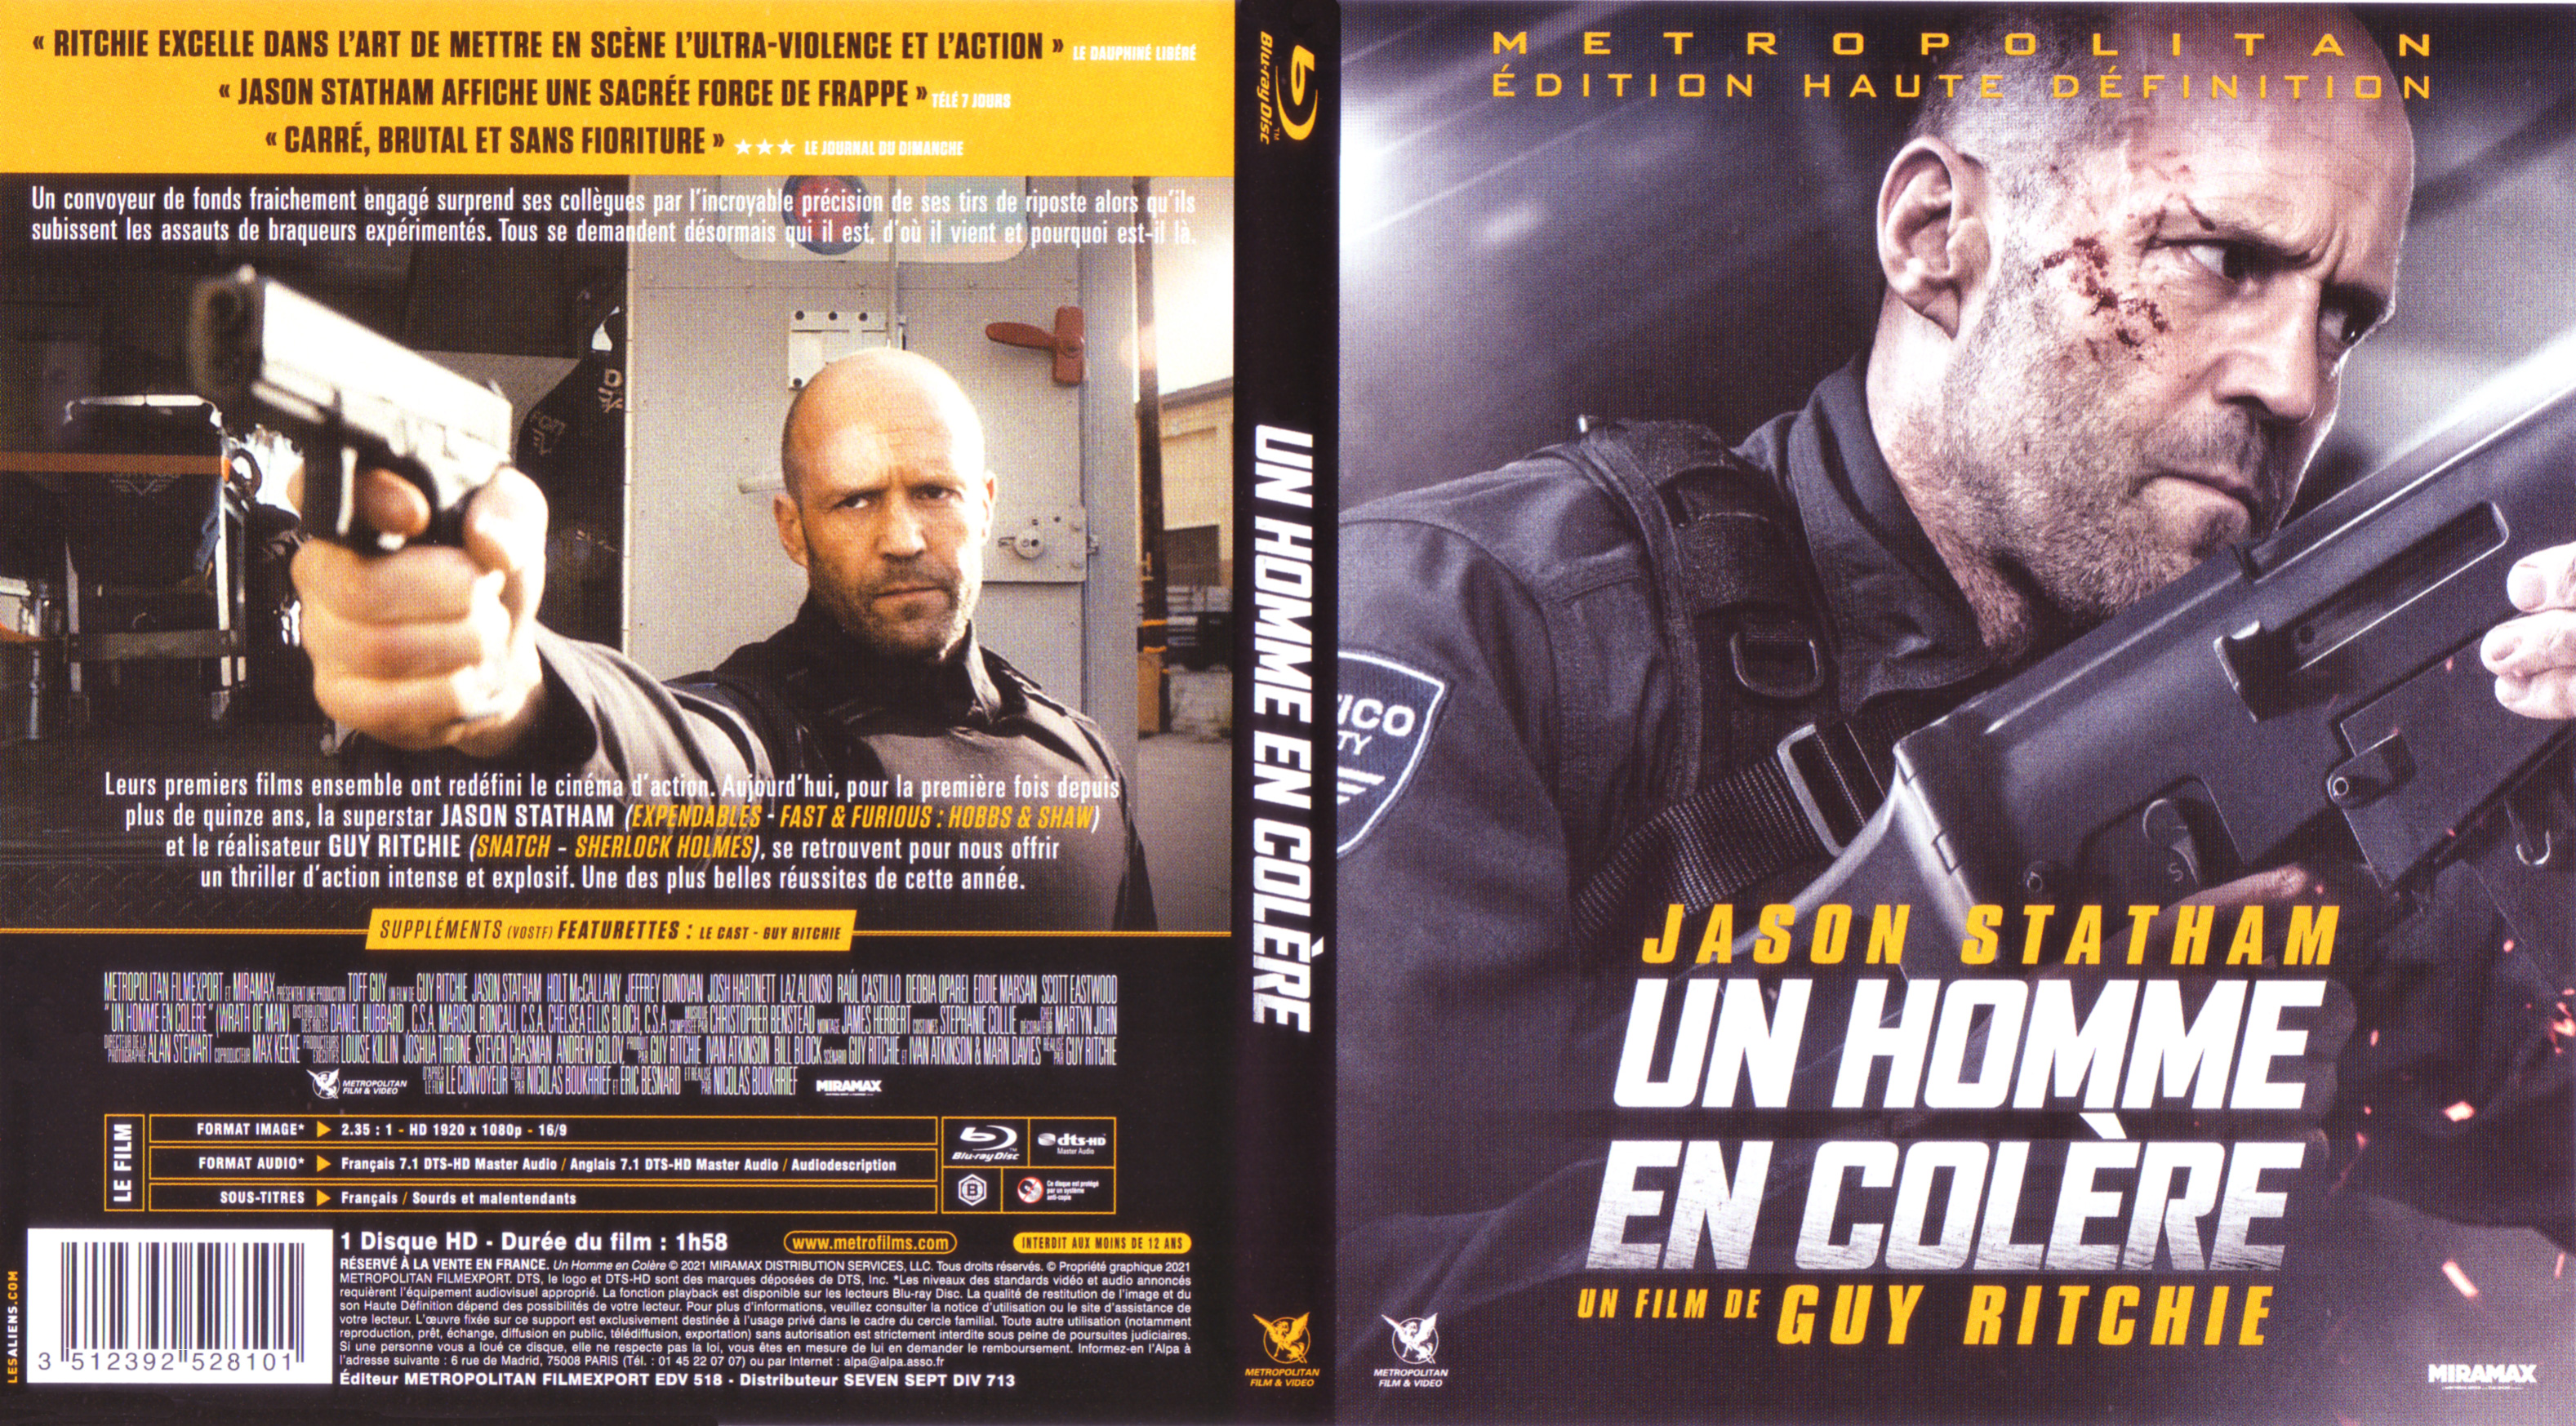 Jaquette DVD Un homme en colre (BLU-RAY)